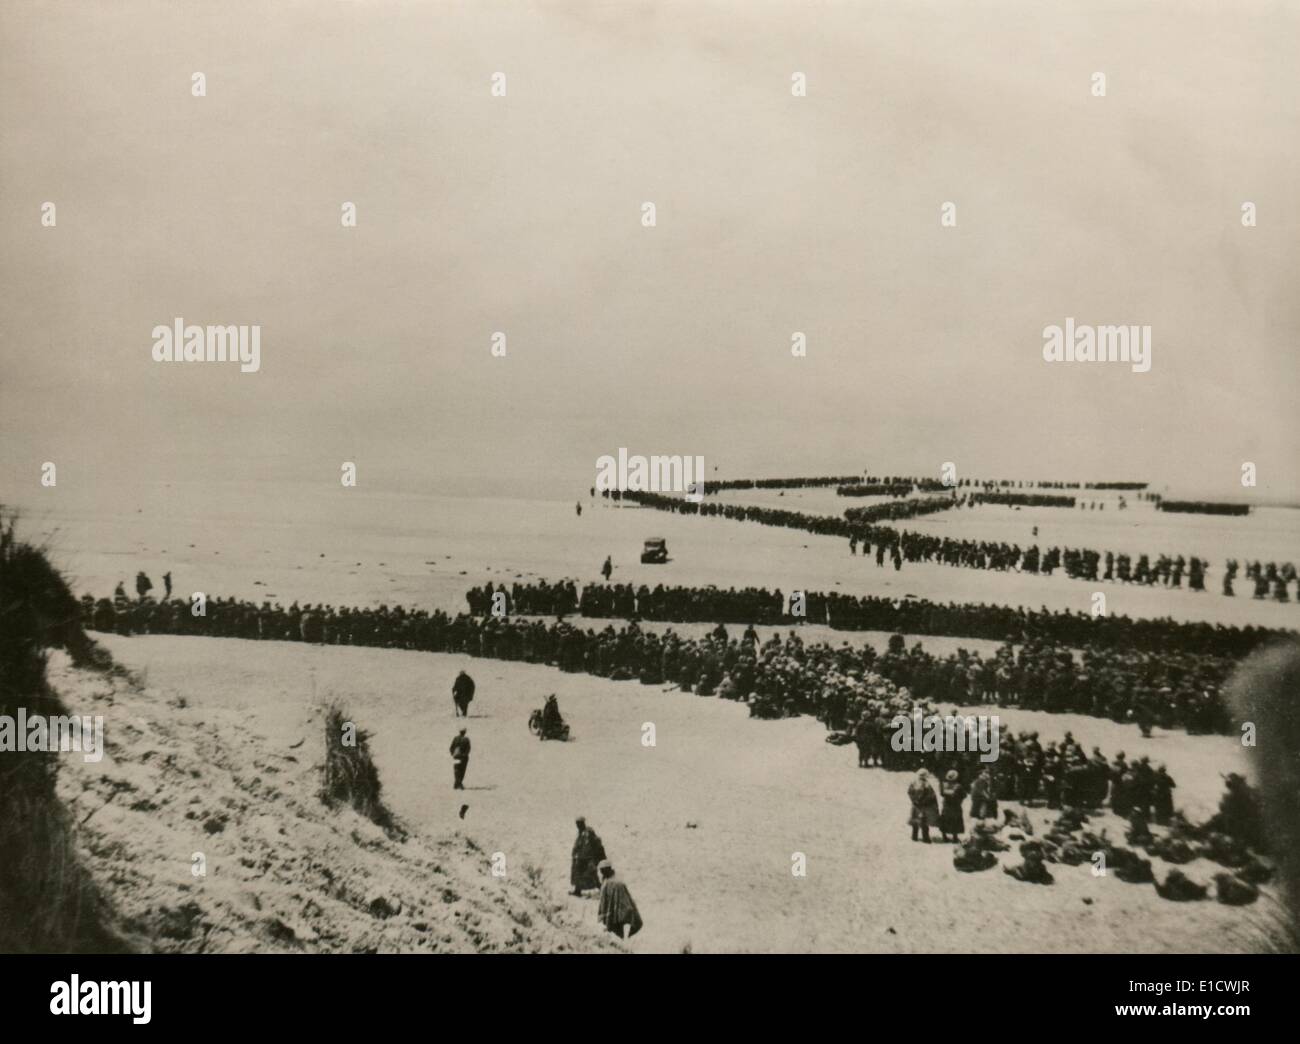 Militärische Evakuierung von Dünkirchen im 2. Weltkrieg. Tausende von britischen und französischen Truppen warten auf den Dünen des Strandes von Dünkirchen Stockfoto